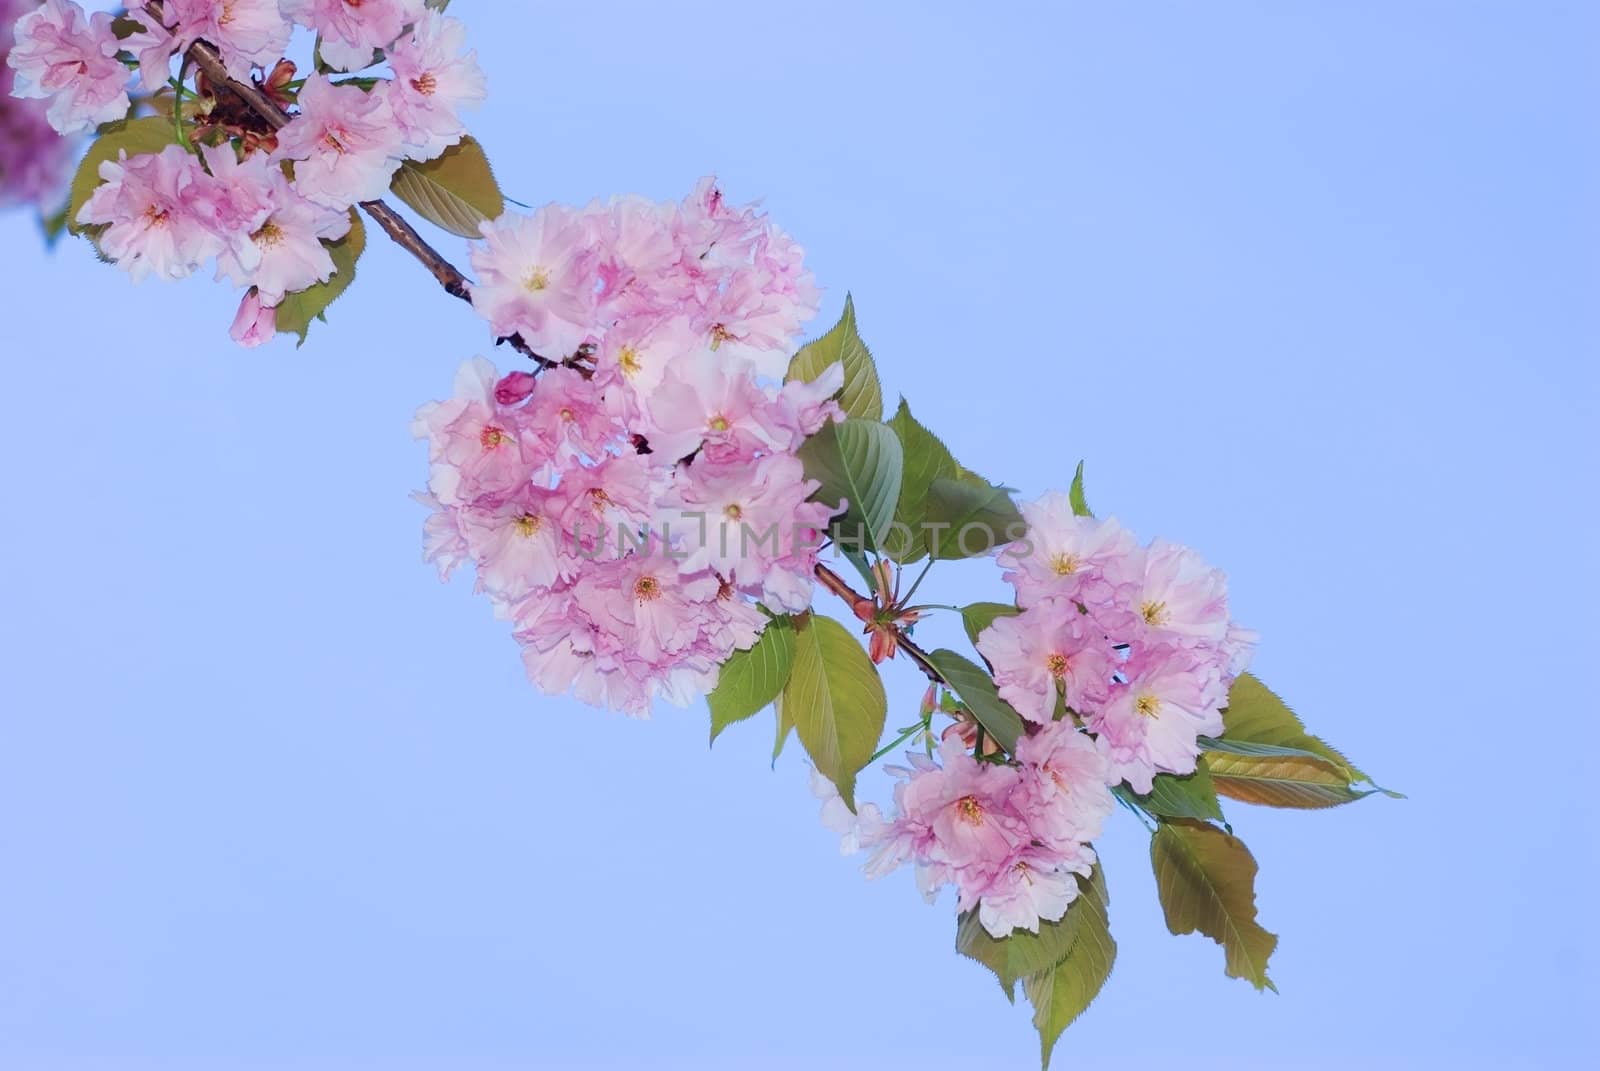 Cherry blossom by vrvalerian